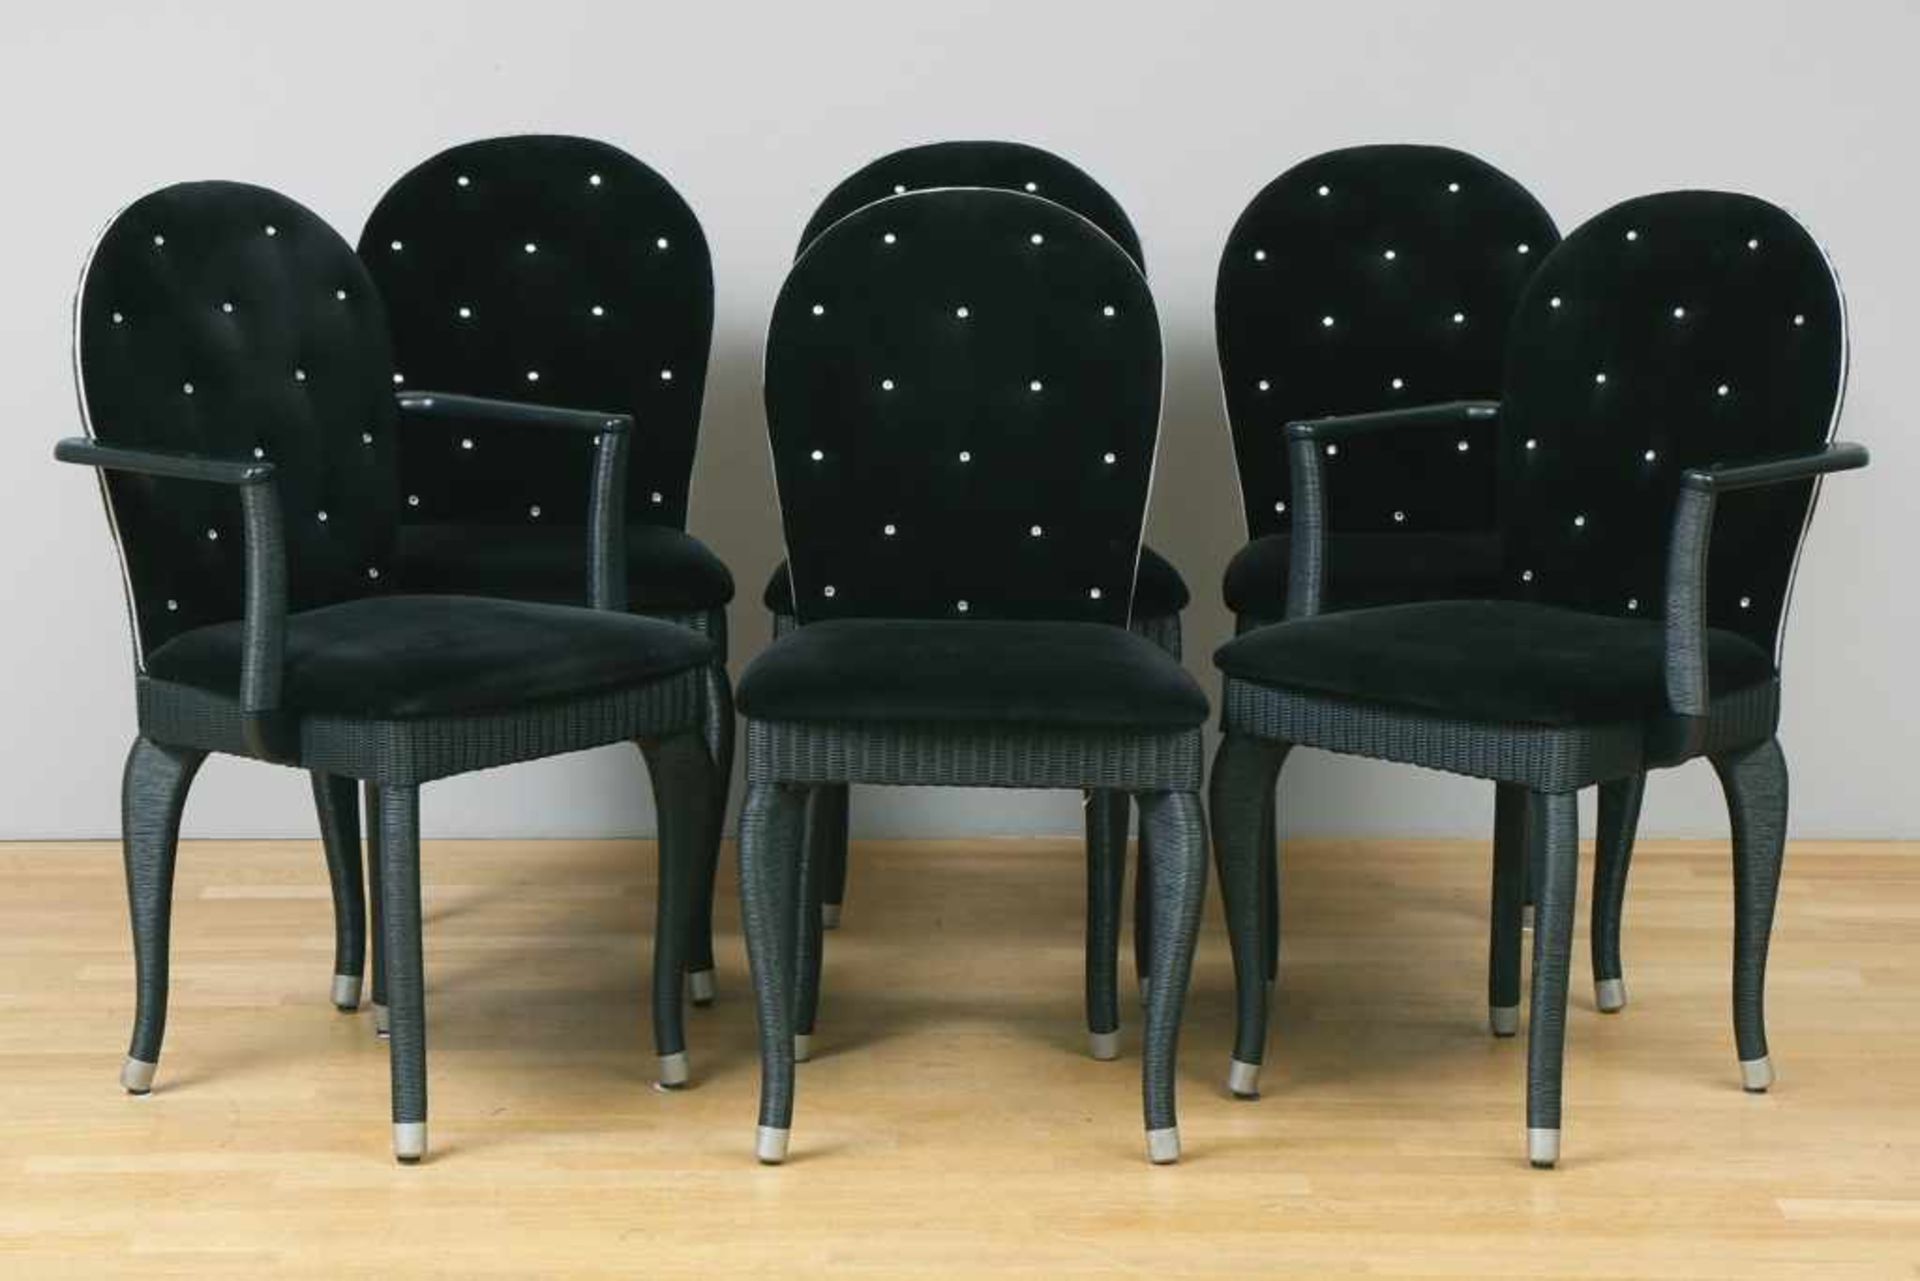 6 AKZENTE ¨Opera¨ Stühle Rahmen Rattan-Geflecht, schwarz lackiert, Medaillonrücken und Sitzfläche